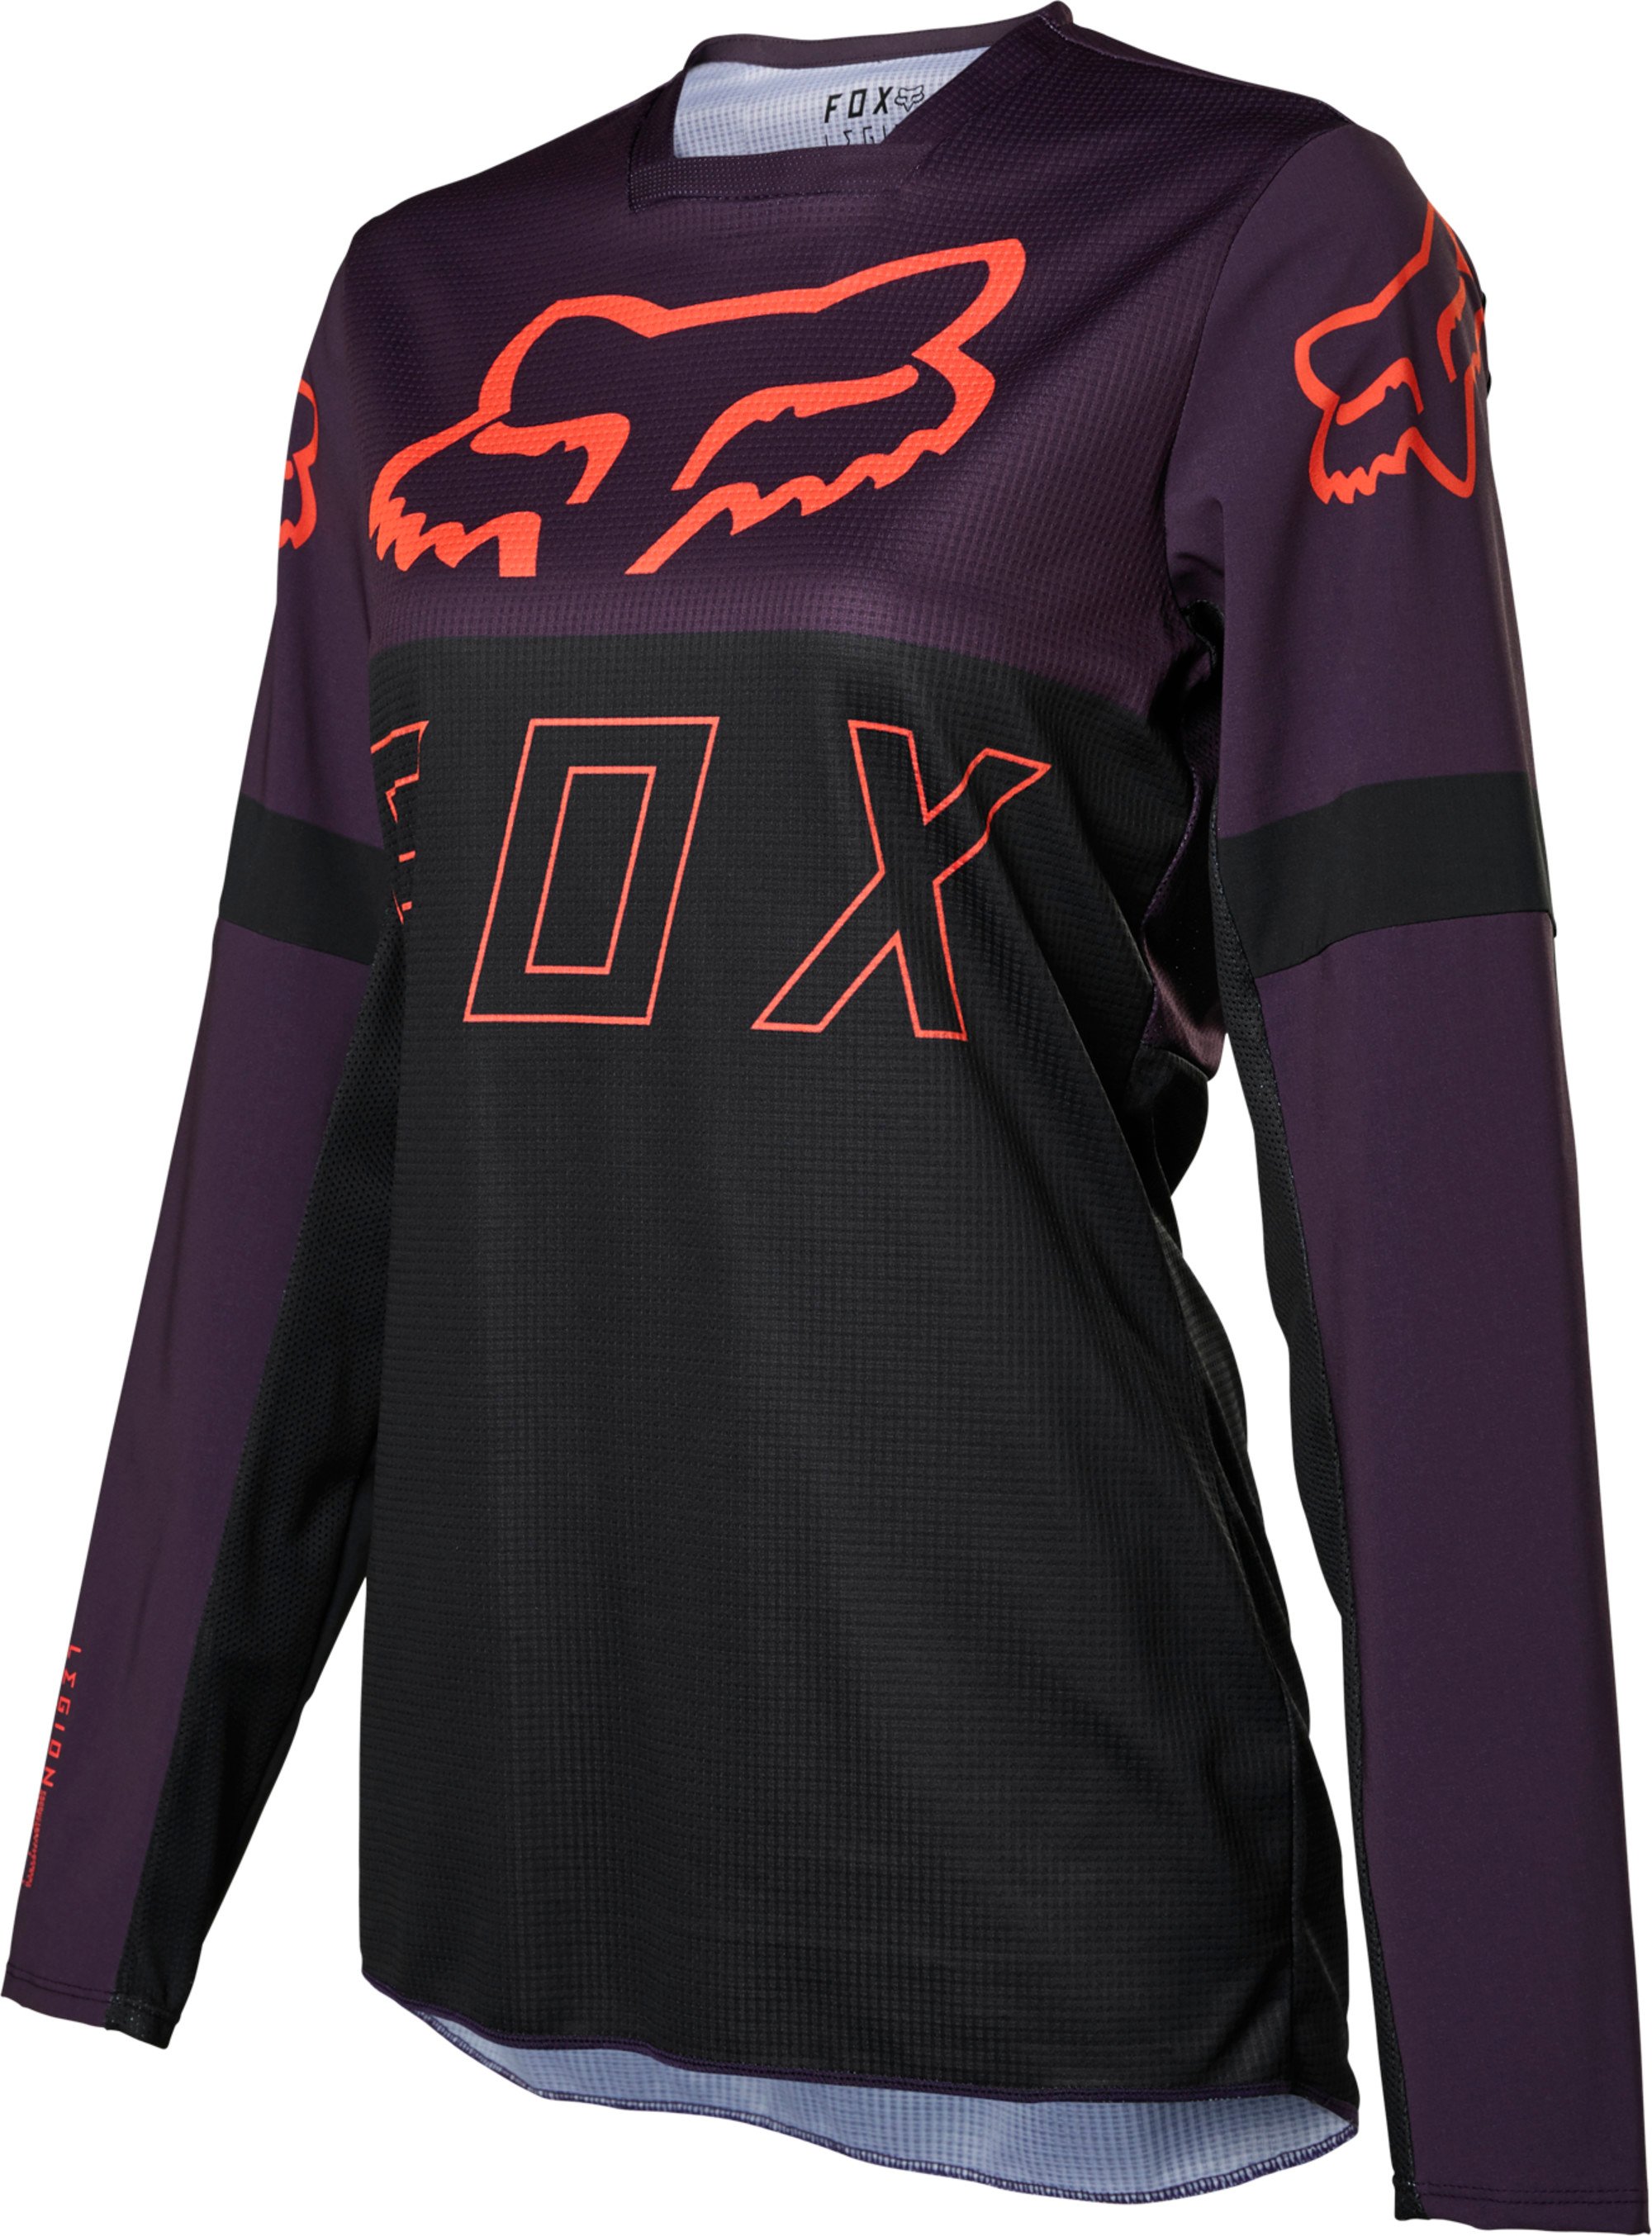 motocross chandails par fox racing pour femmes legion lt